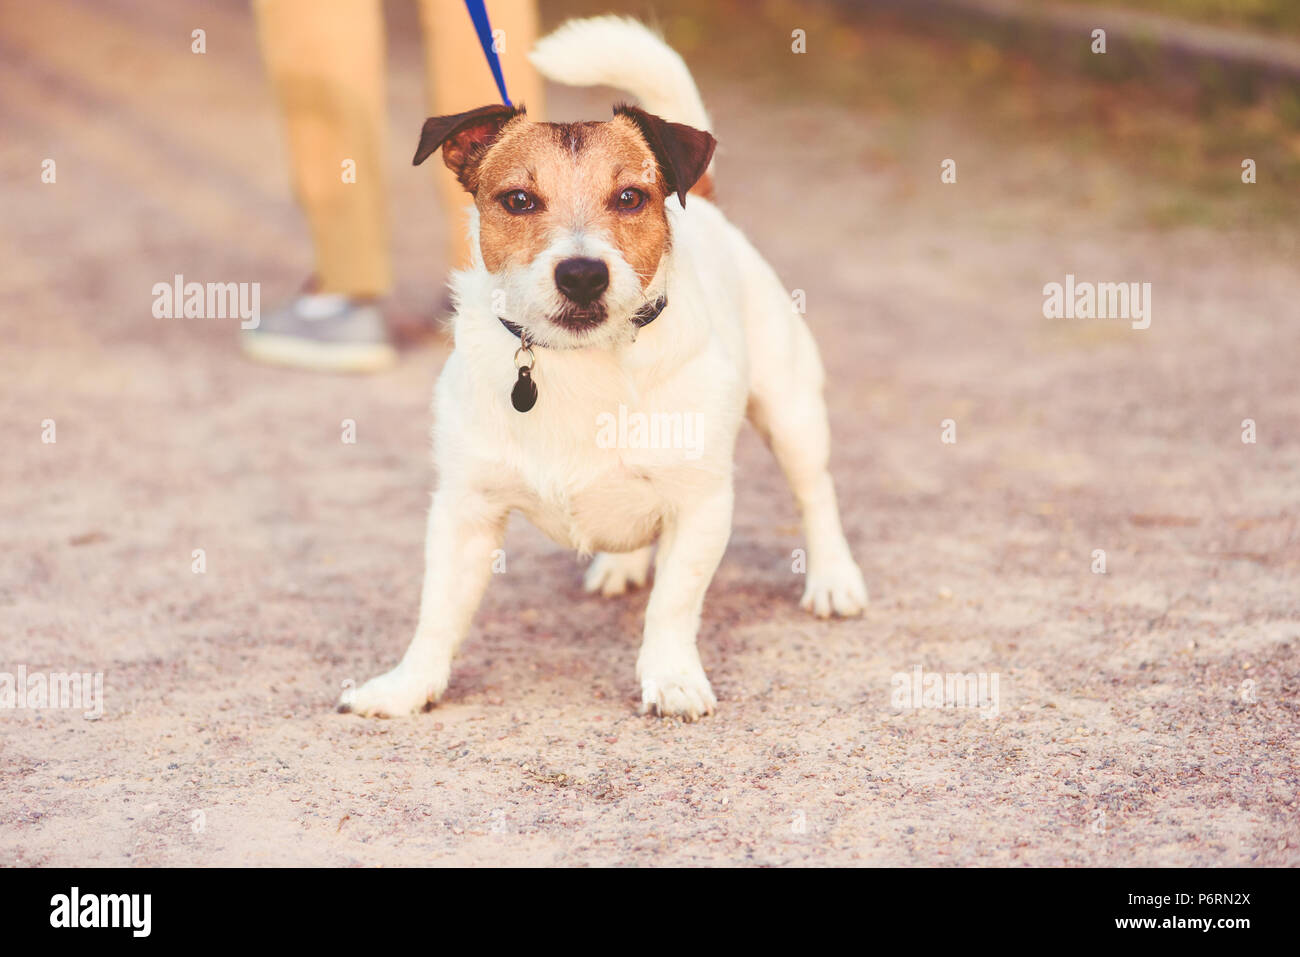 Hund Leine ziehen wollen nicht nach Hause von spazieren zu gehen Stockfoto